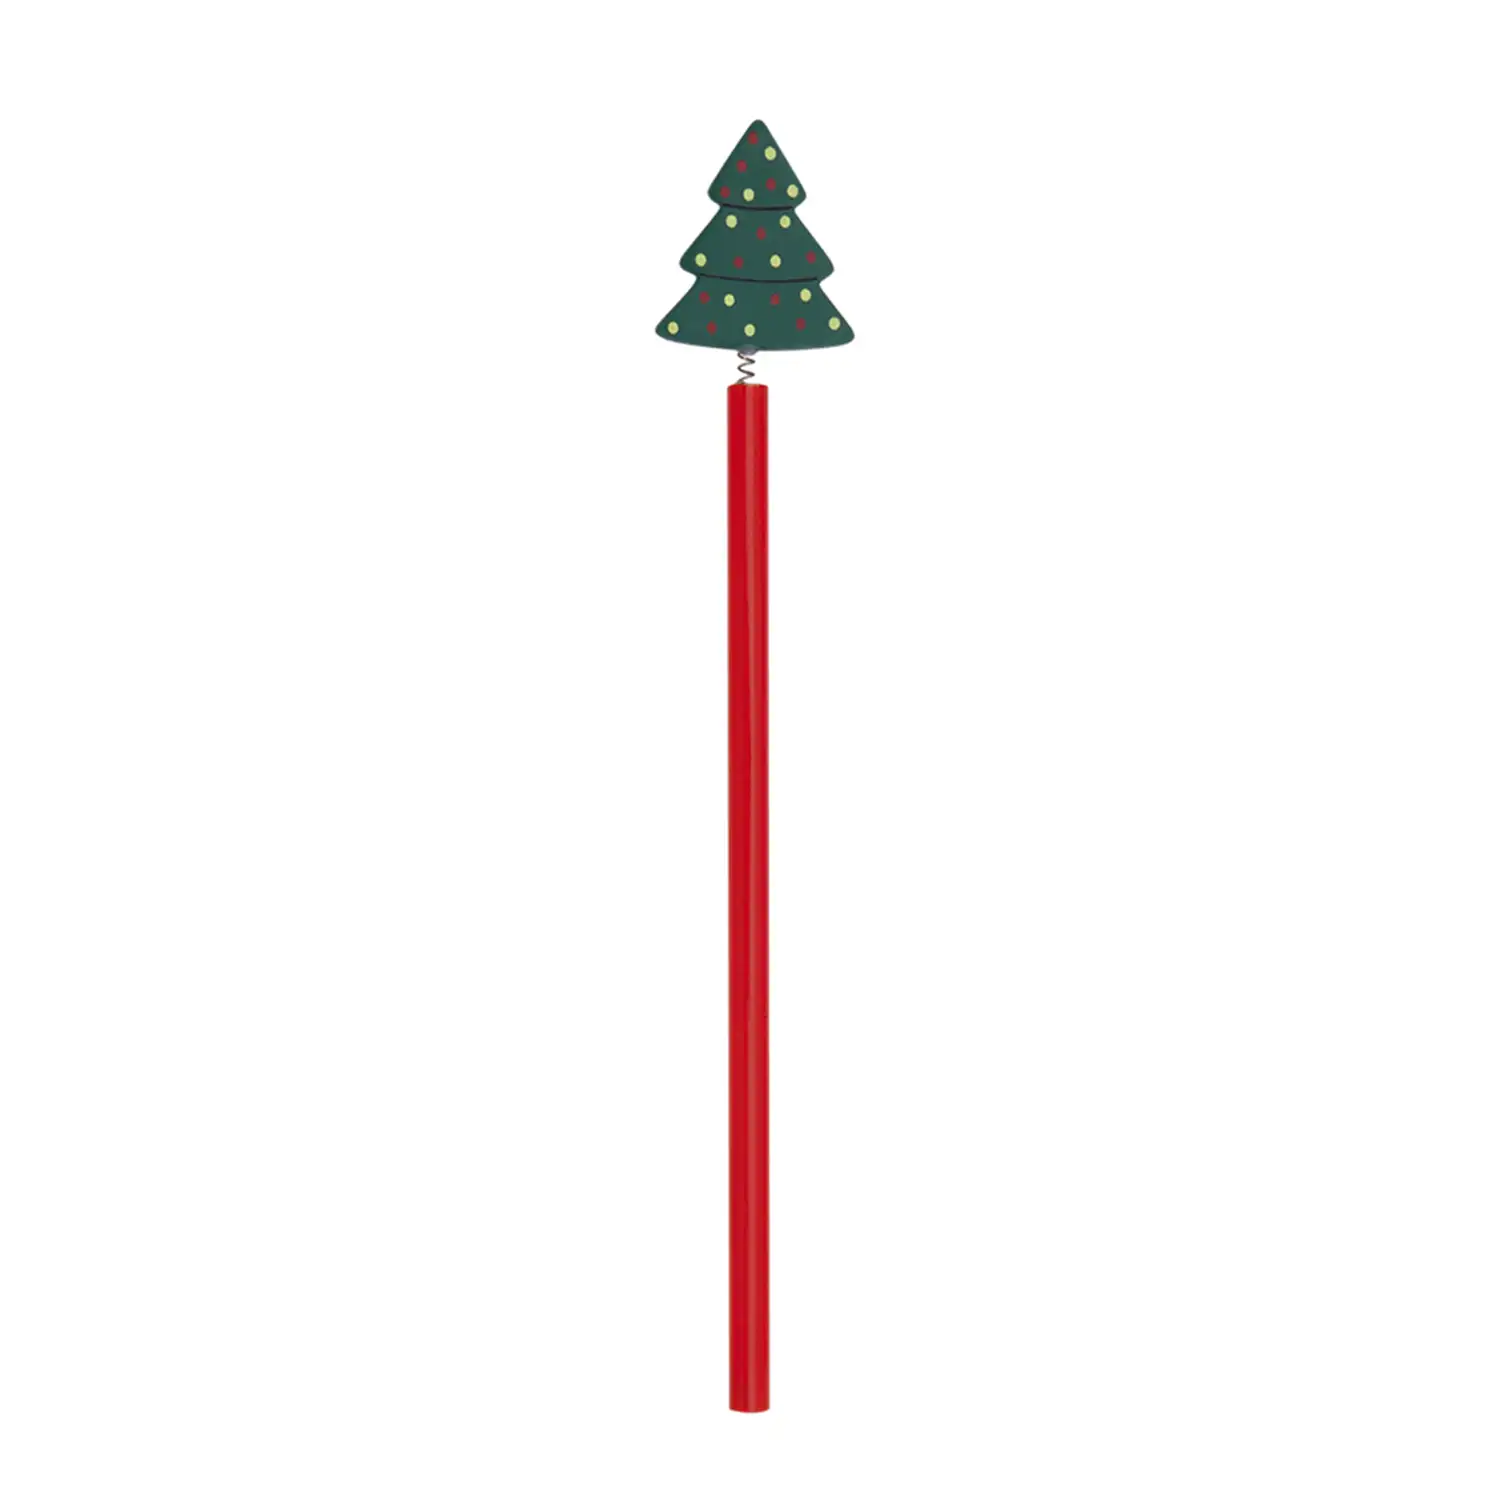 Lápiz de madera LIREX con diseño árbol navideño